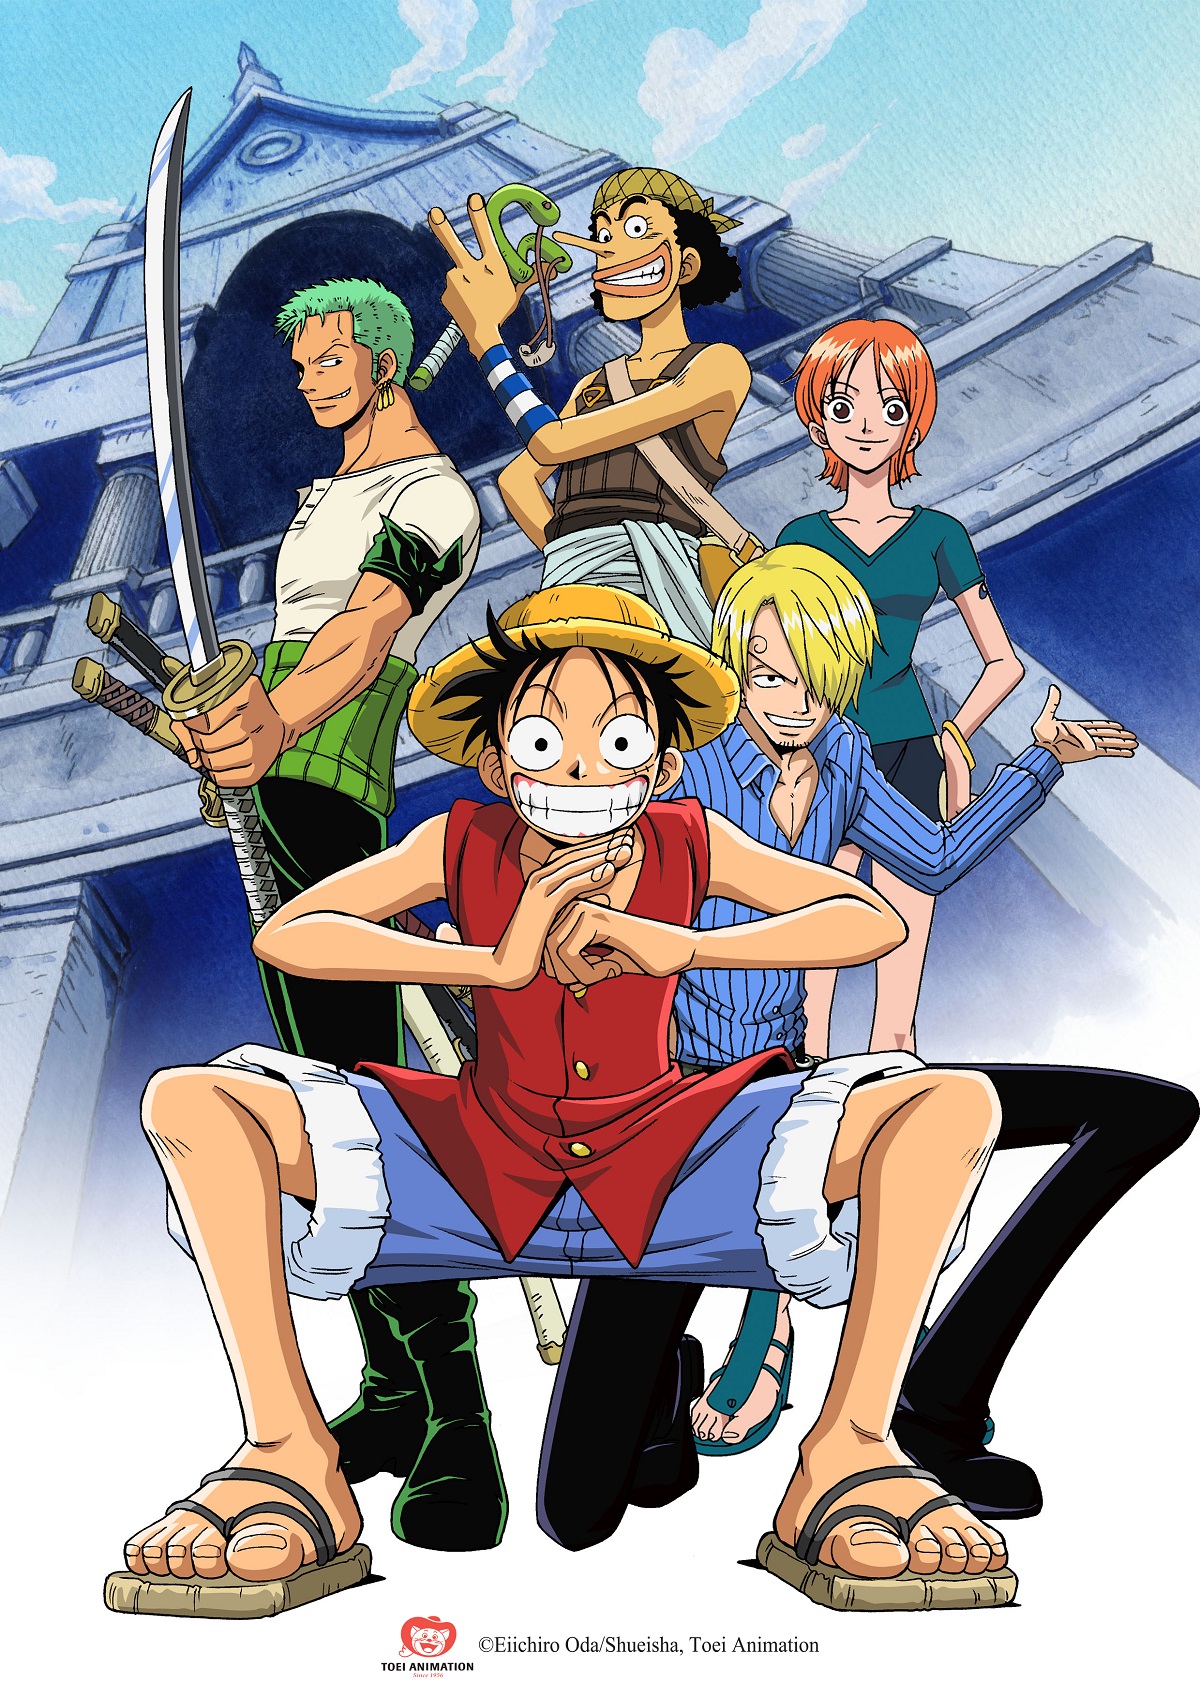 Hành trình 20 năm của truyện tranh One Piece đã mang lại cho độc giả nhiều cảm xúc và ấn tượng khó quên. Hãy cùng nhau khám phá những hình ảnh đầy cảm hứng về hành trình này, và cảm nhận sự gắn kết và tình cảm giữa các nhân vật trong truyện.